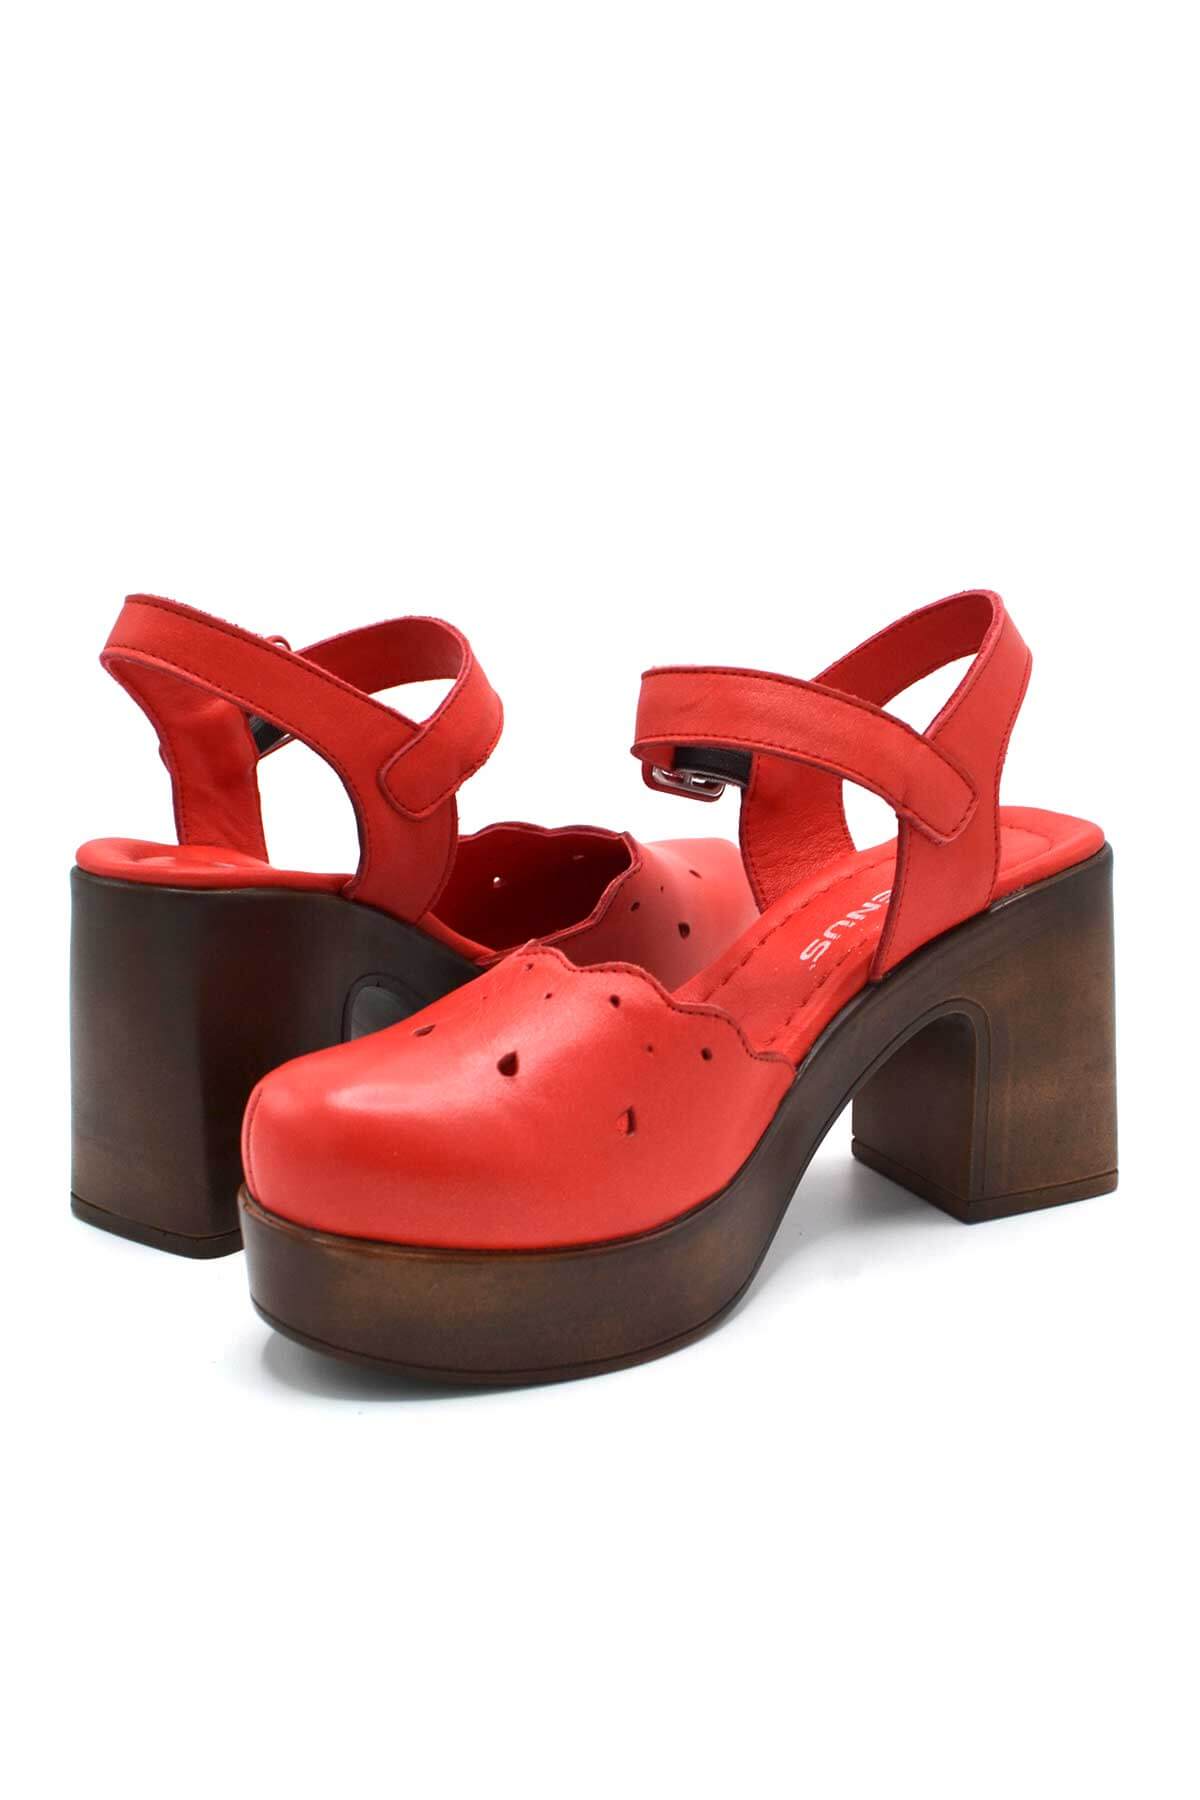 Kadın Apartman Topuk Deri Sandalet Kırmızı 2217001Y - Thumbnail